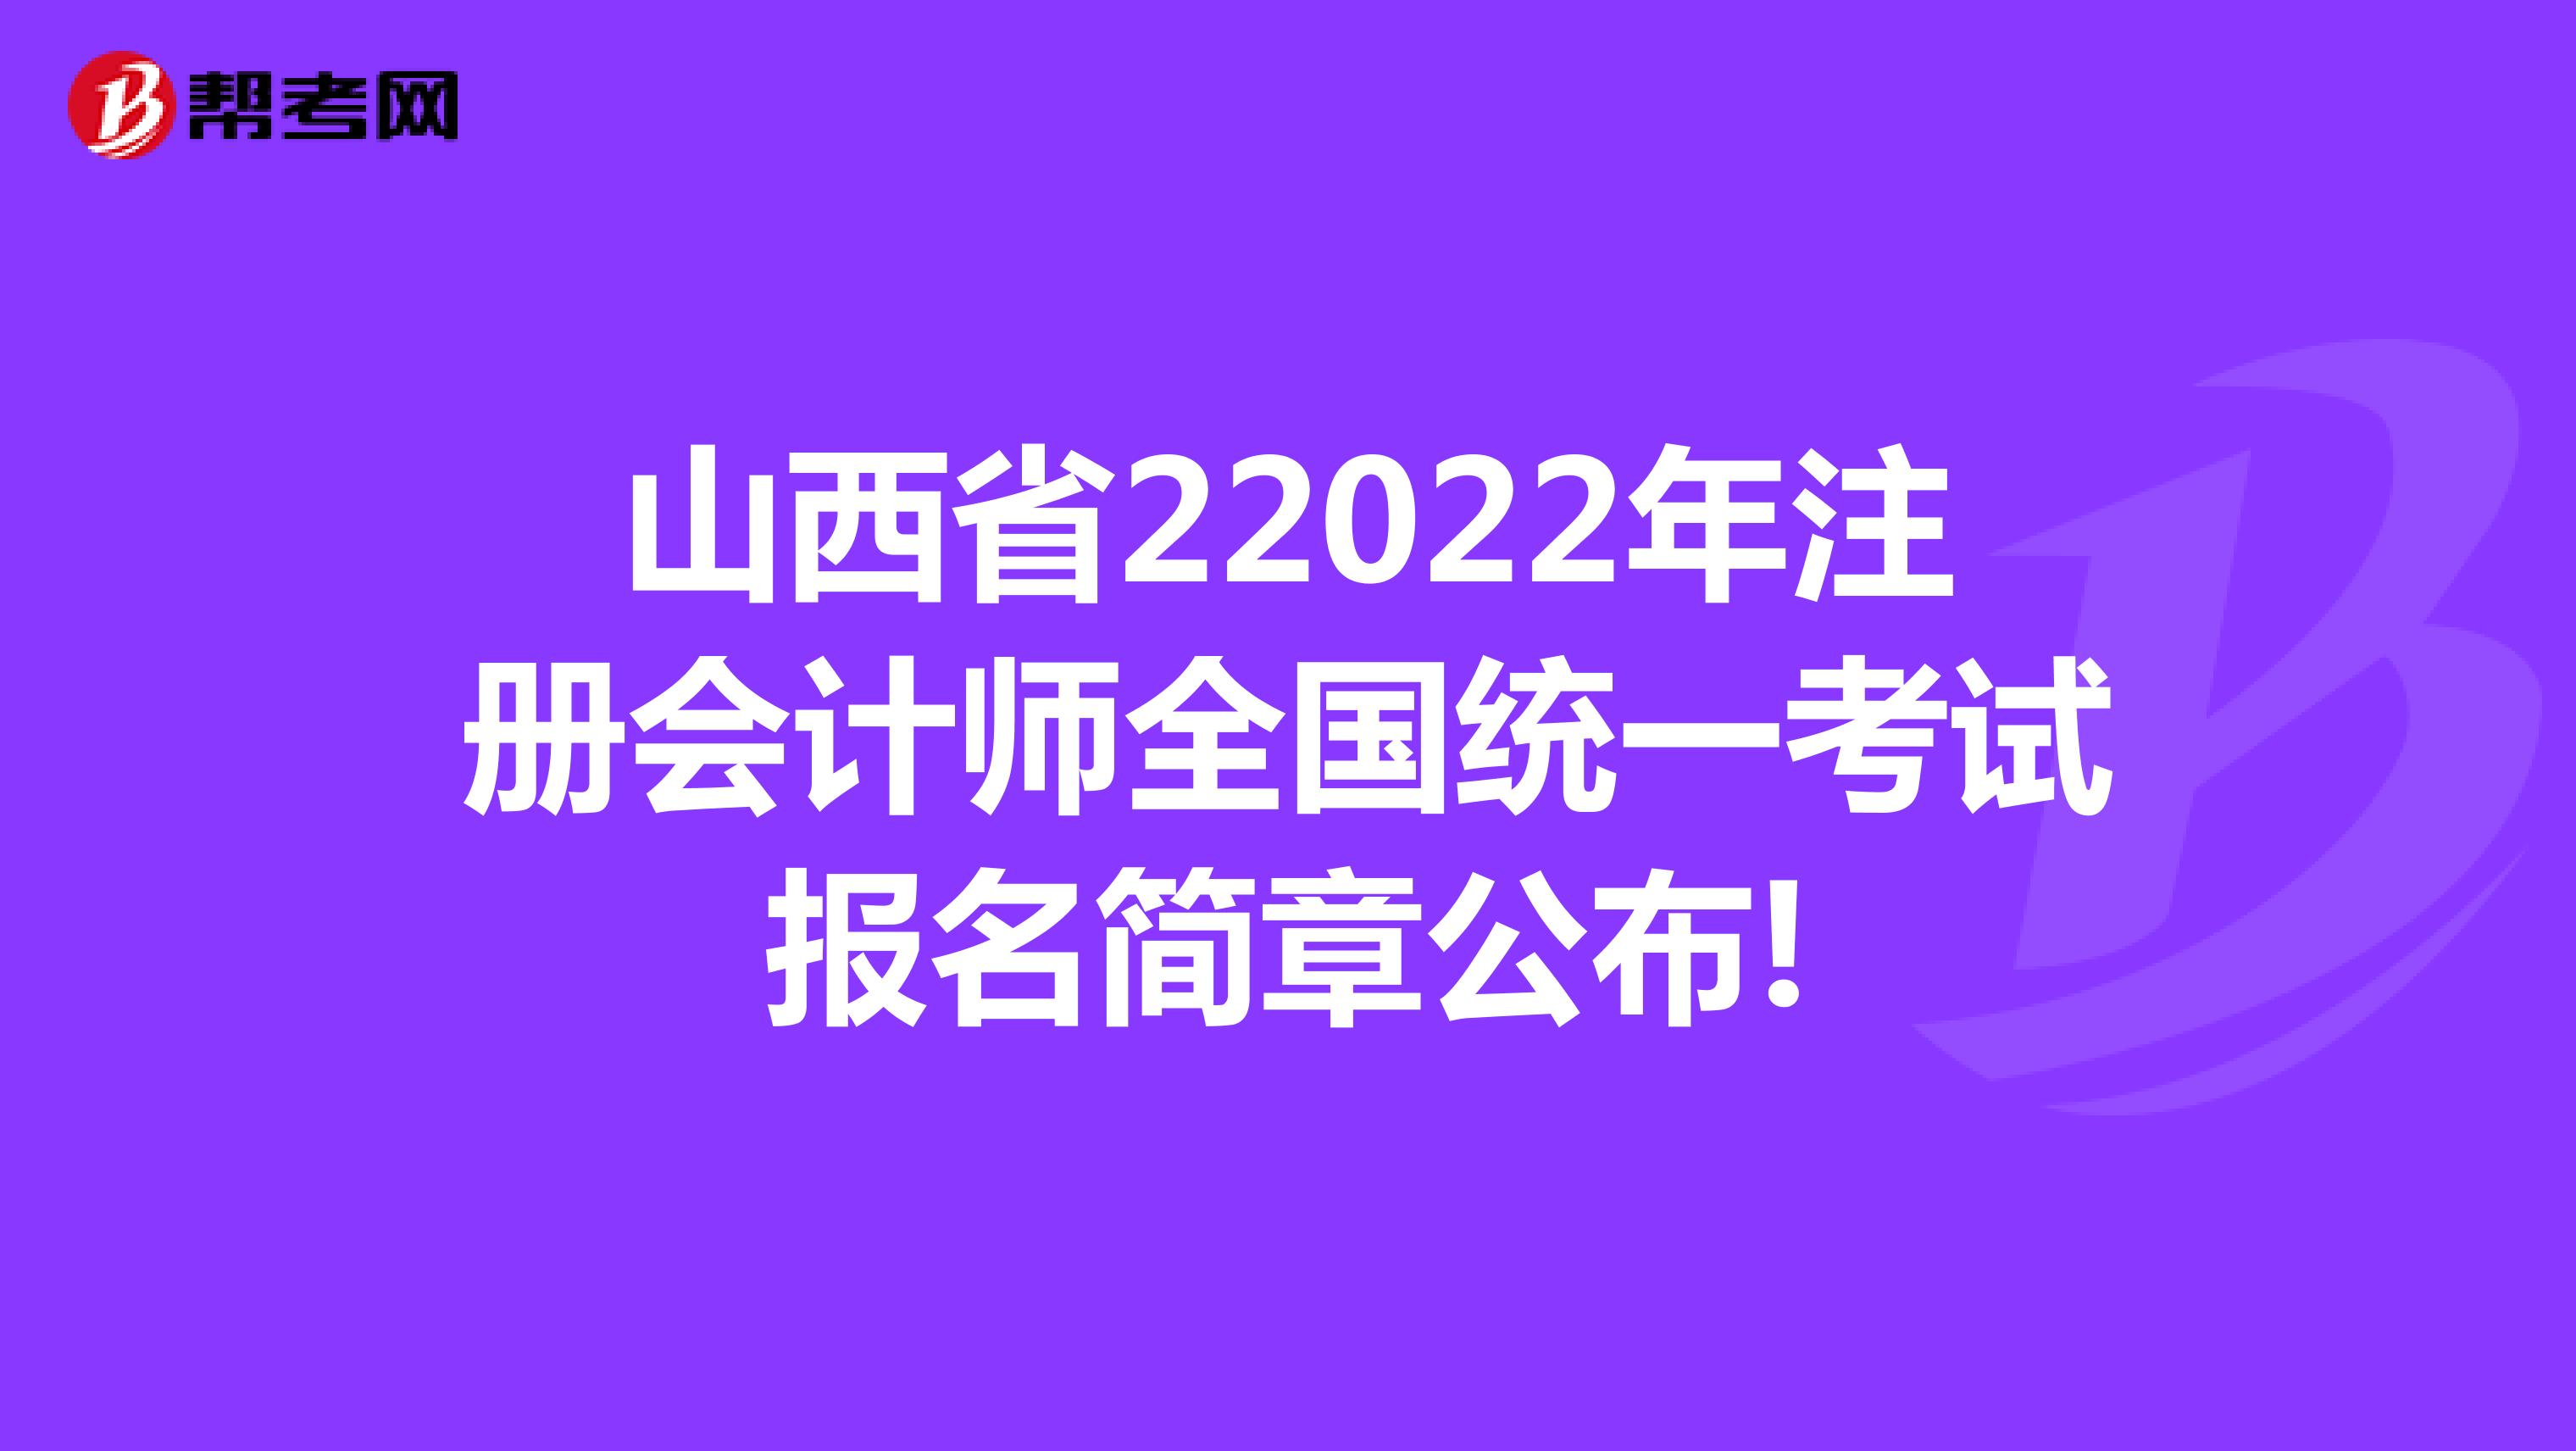 山西省22022年注册会计师全国统一考试报名简章公布!